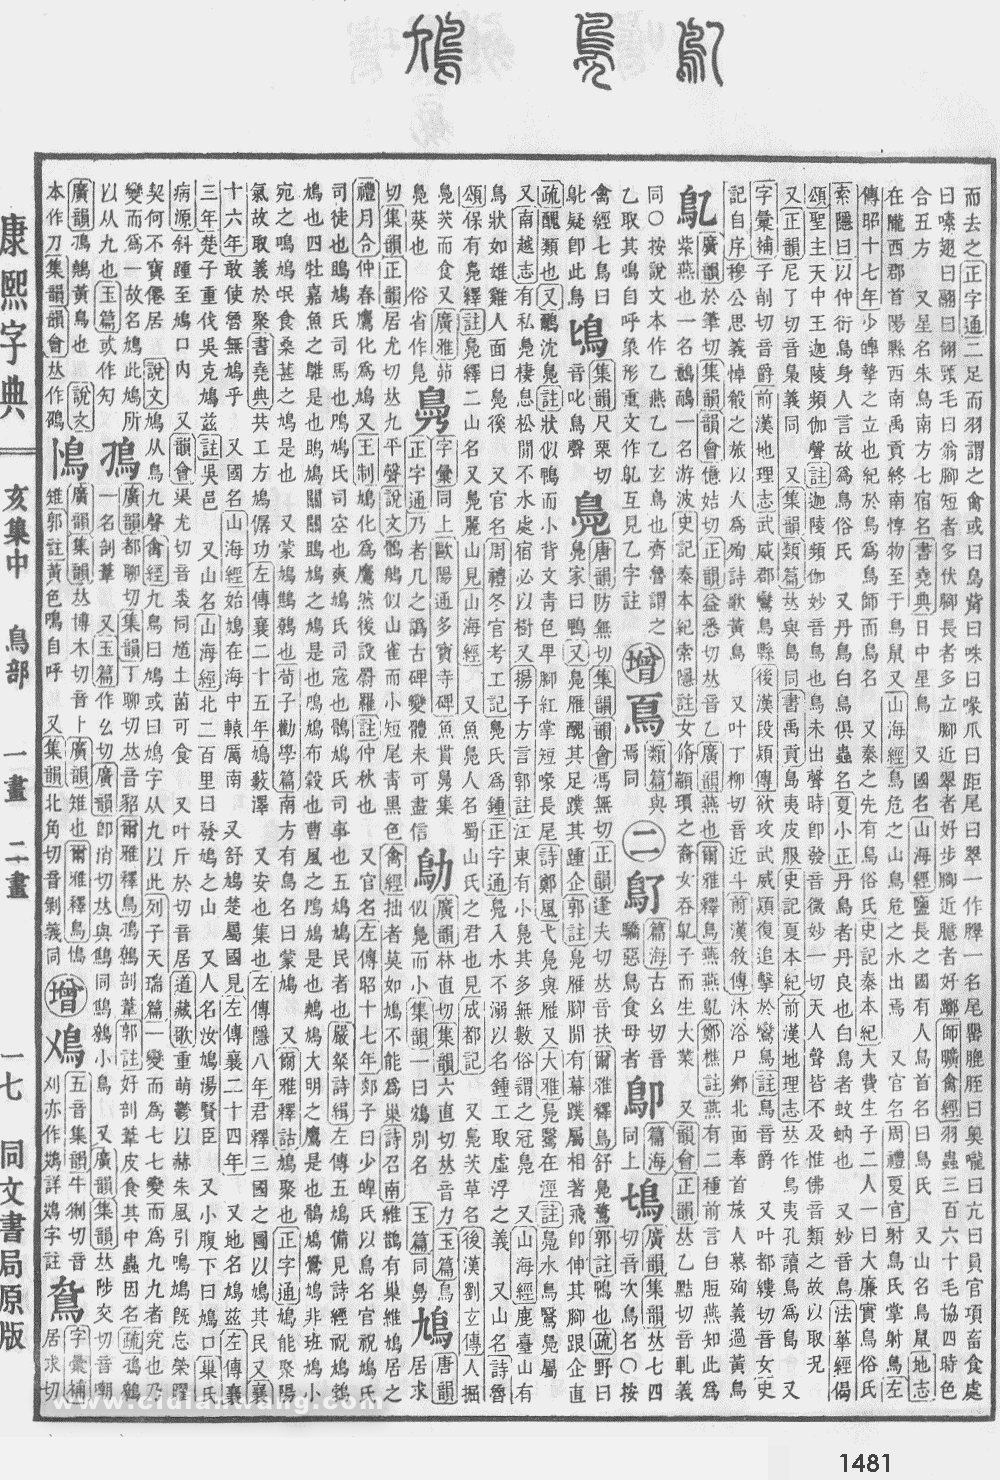 康熙字典掃描版第1481頁